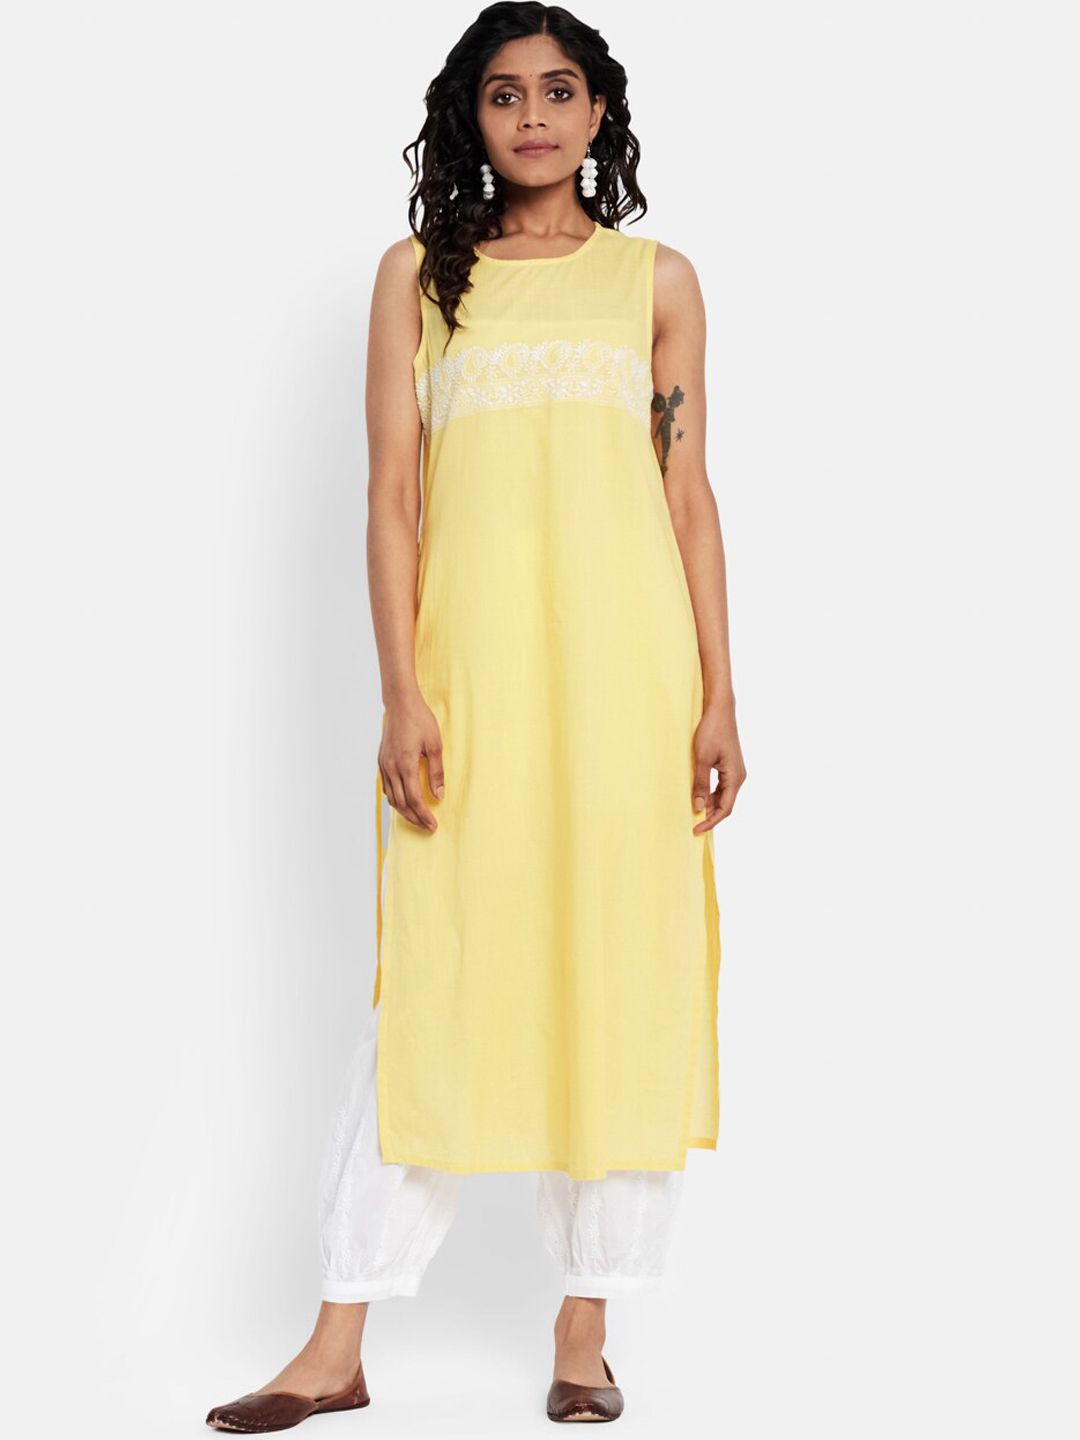 Fabindia Woman Yellow Embroidered Kurta Price in India